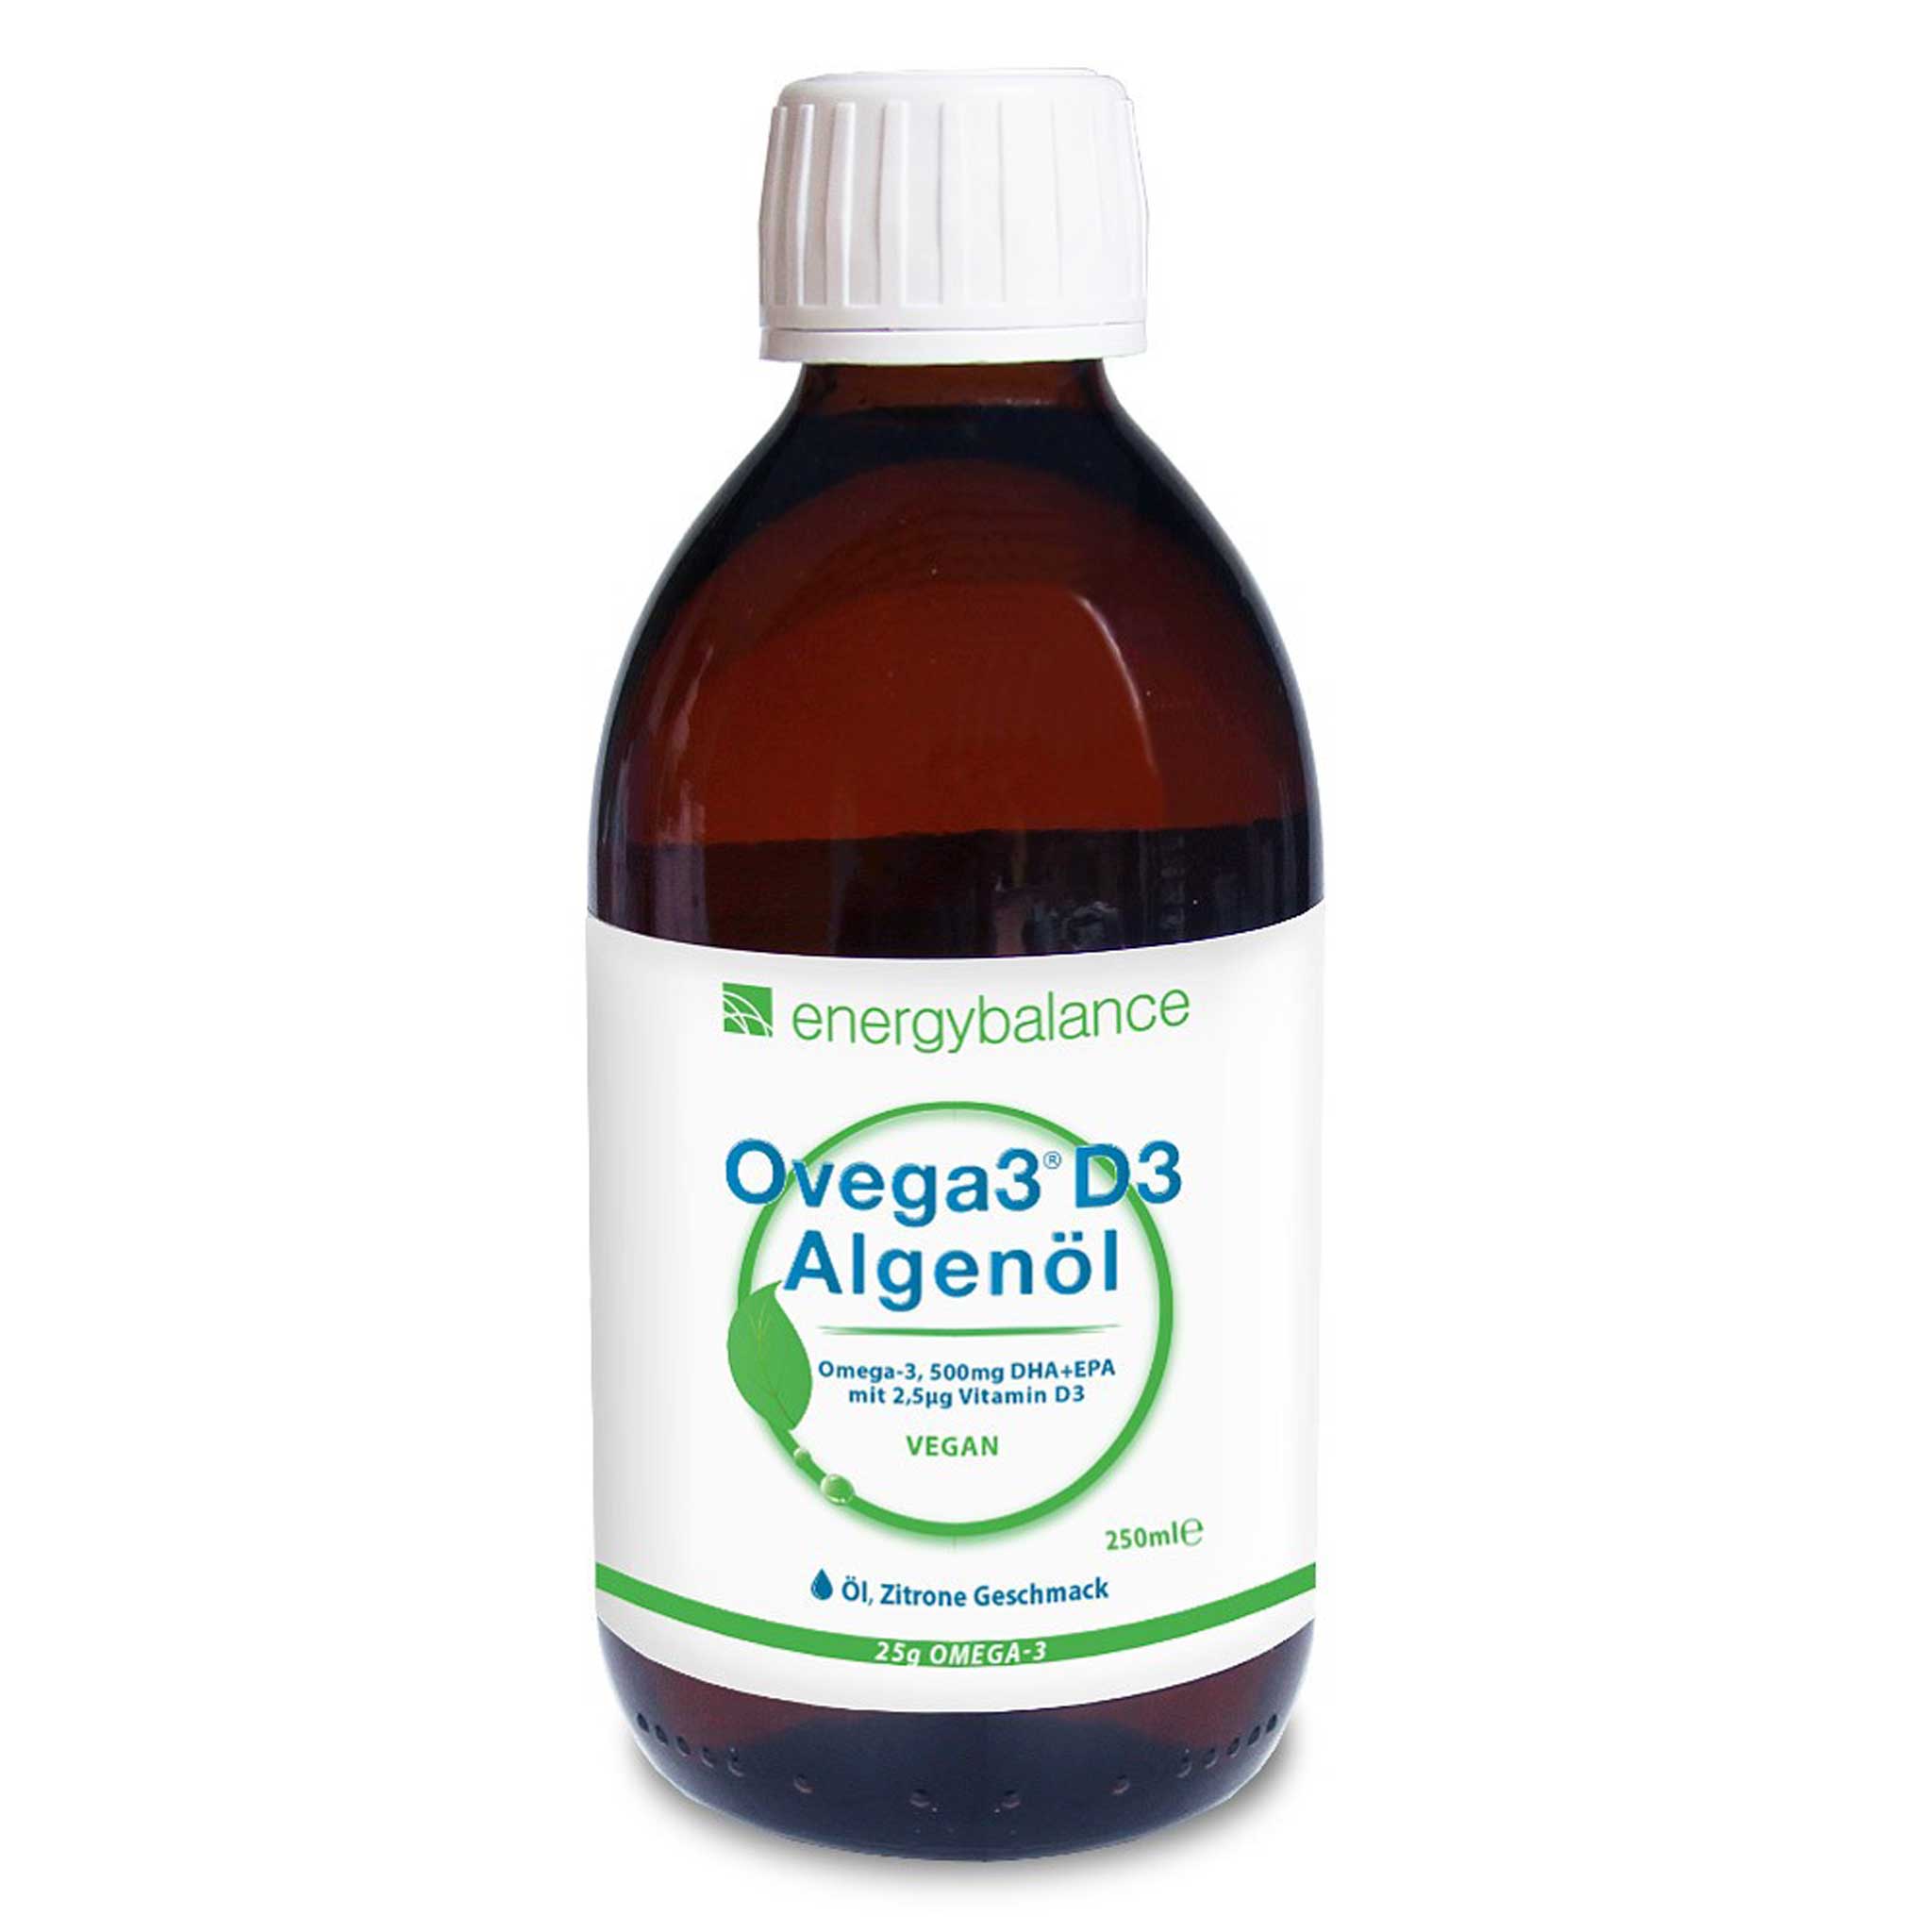 Ovega3 D3 Algenöl 500mg DHA+EPA, 250 ml